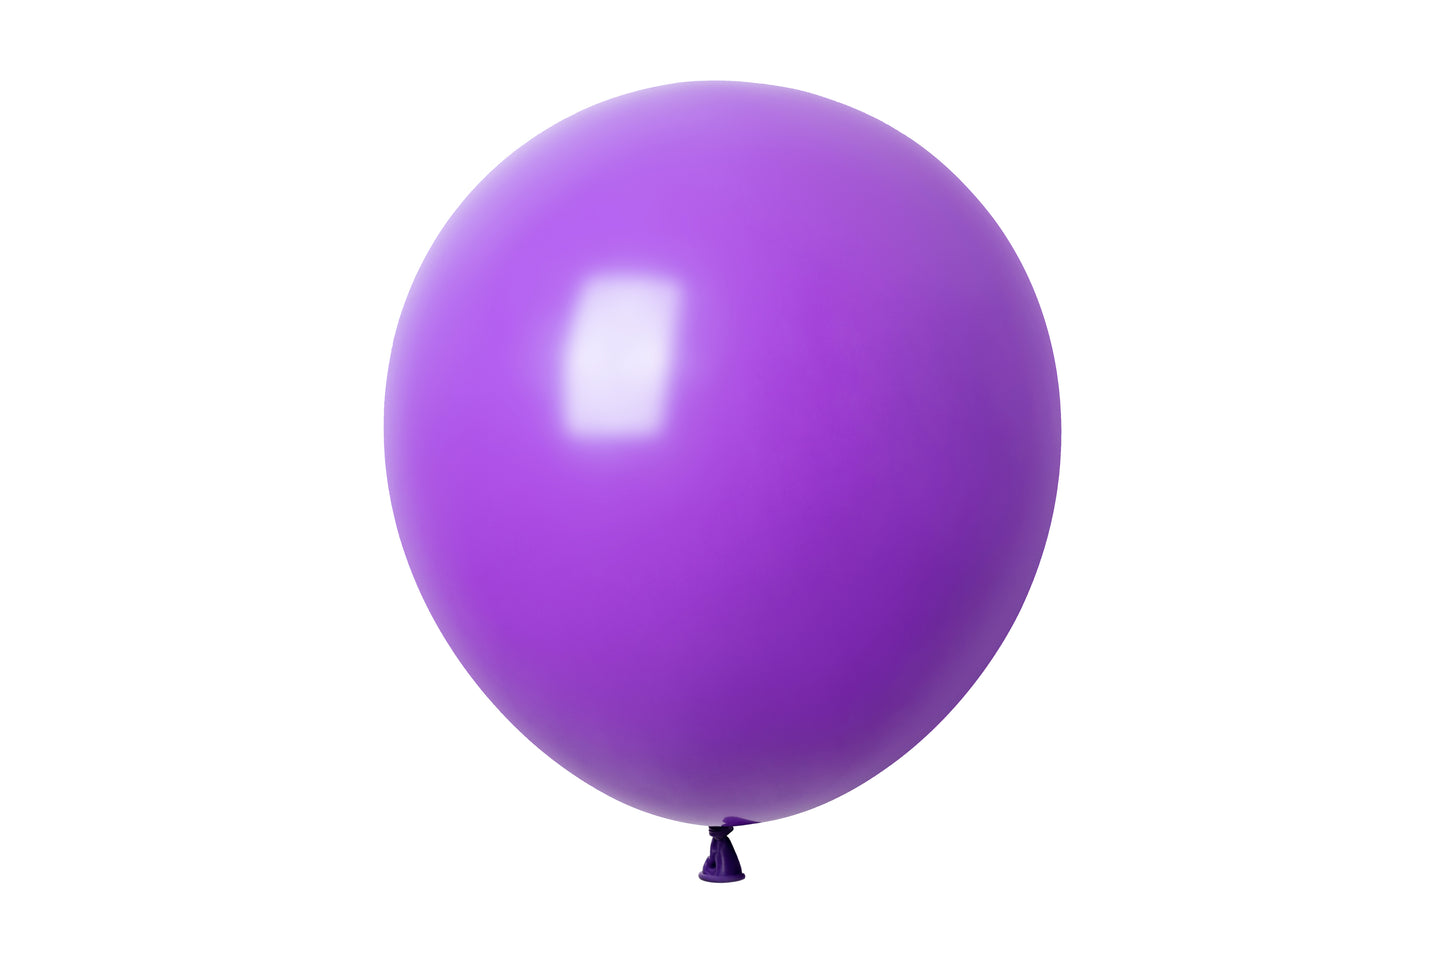 Winntex Premium 36" Latex Balloon - Lavender - 5ct